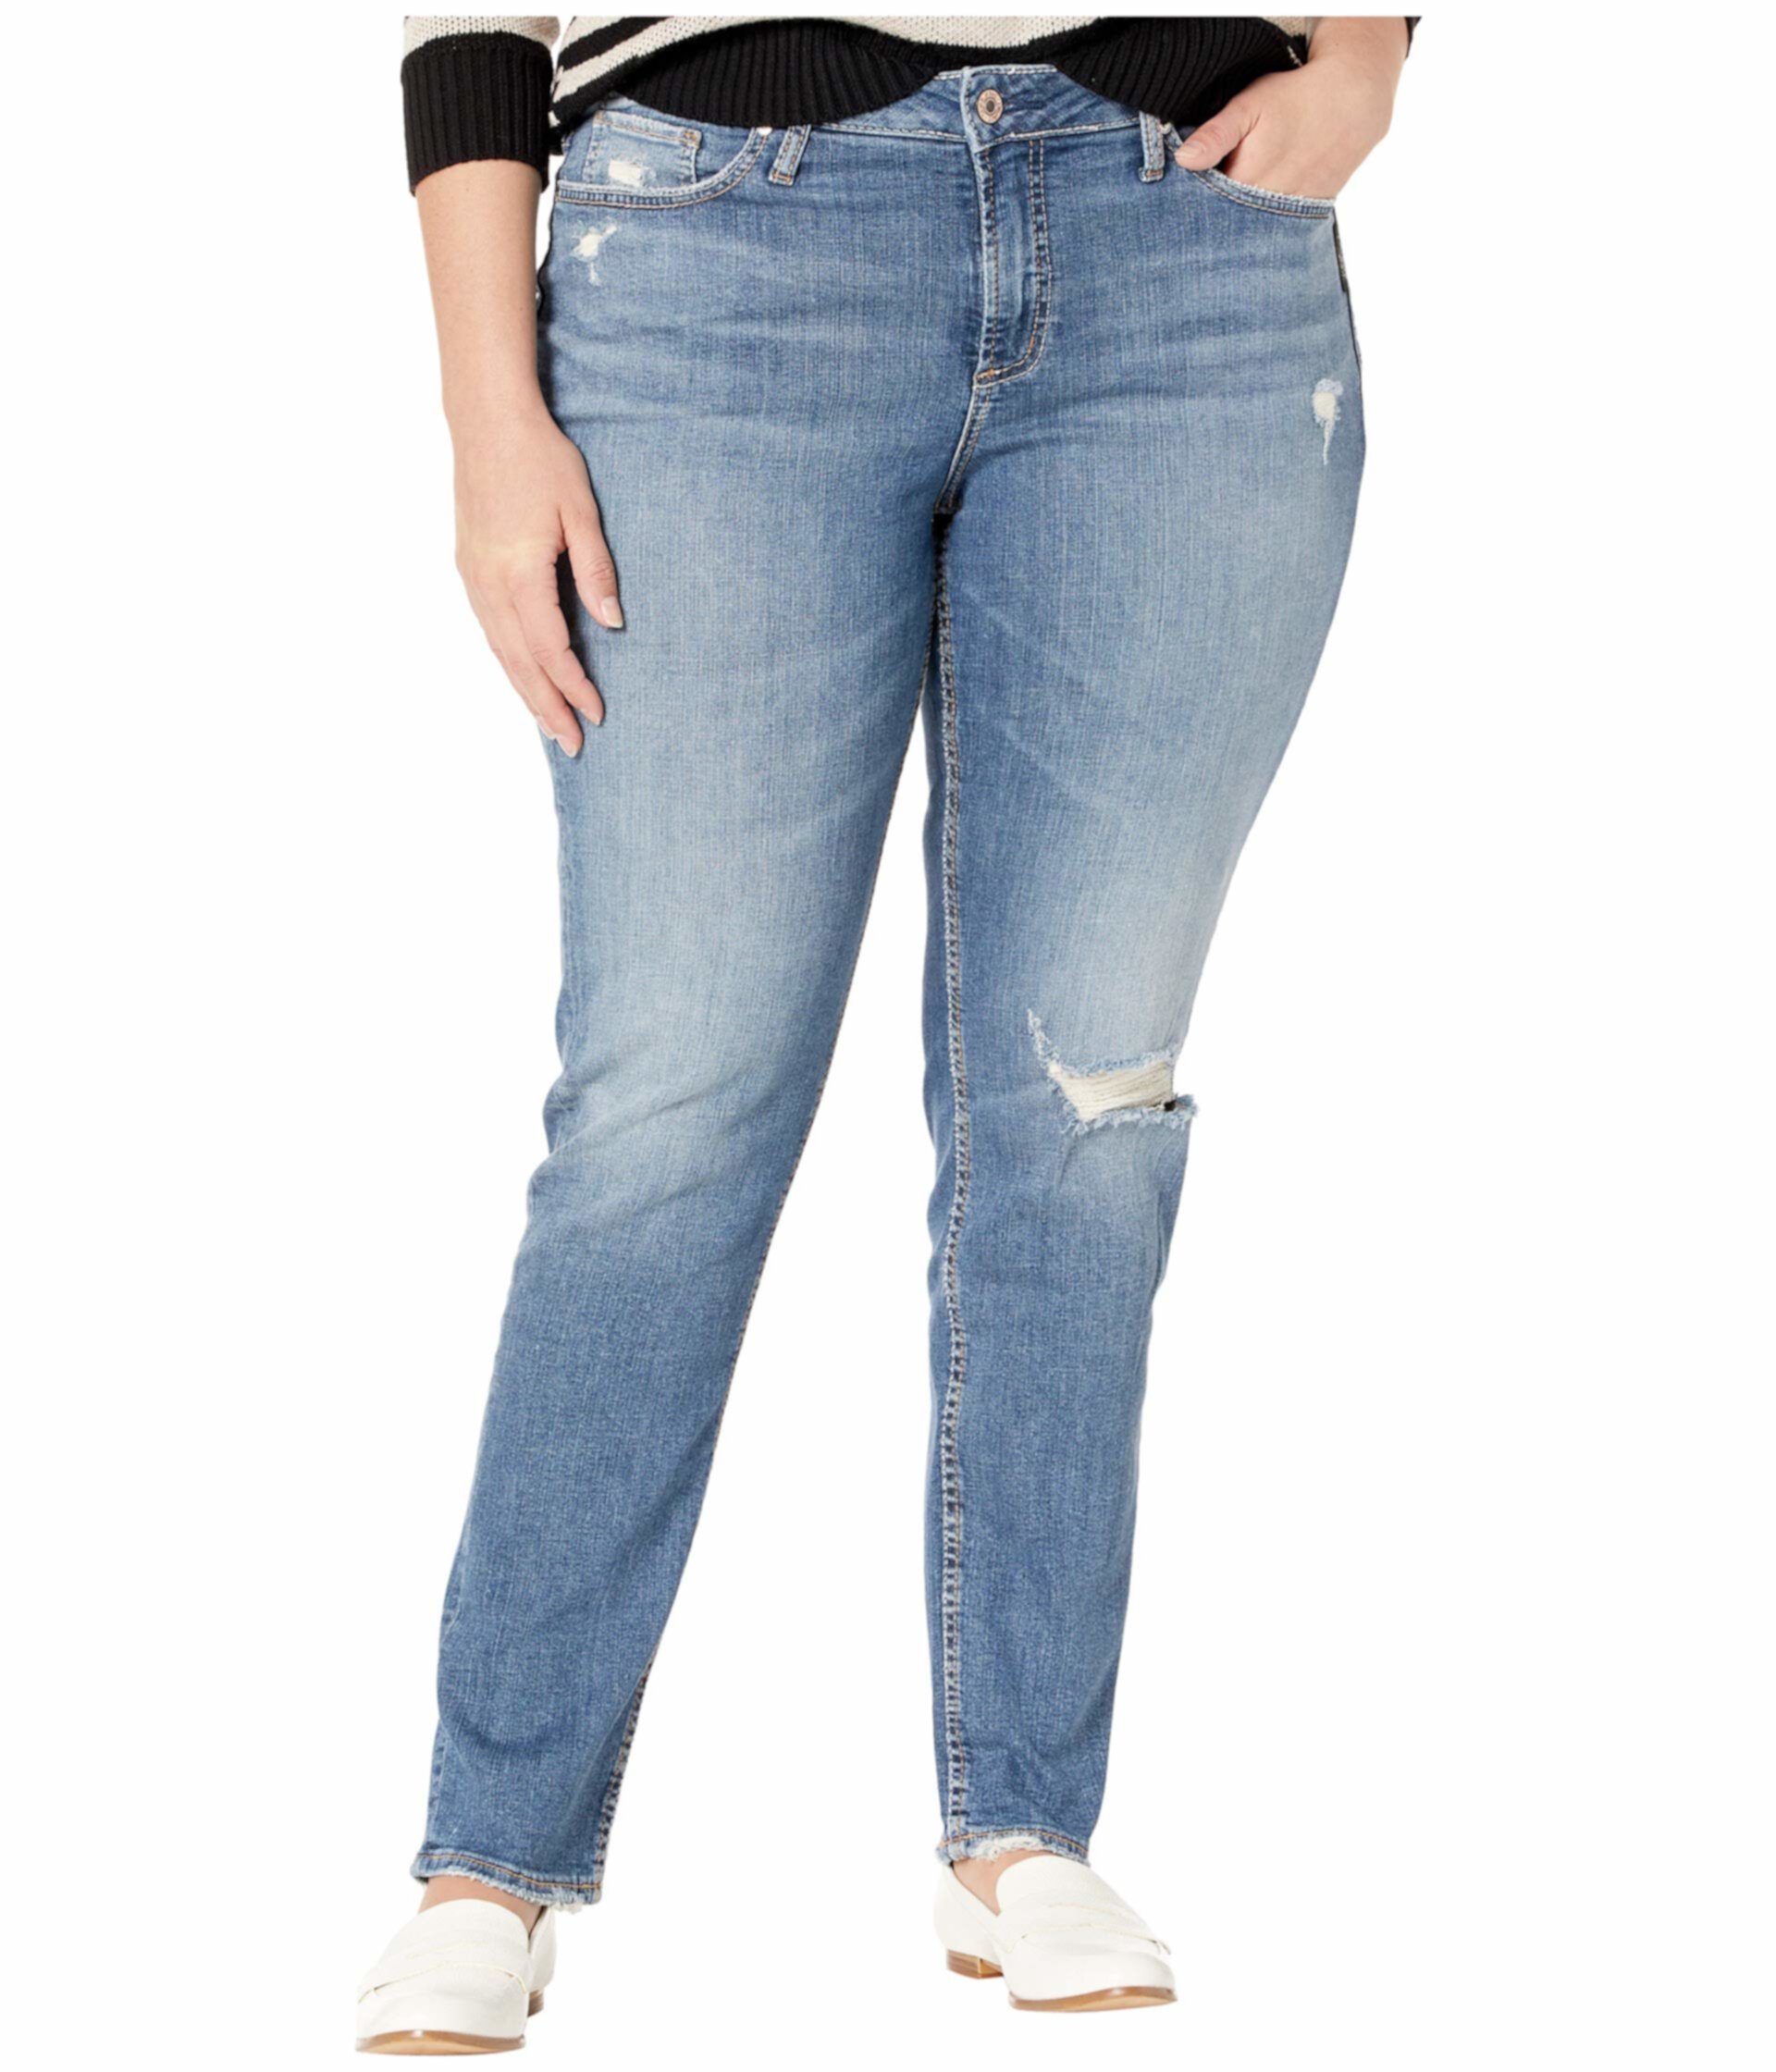 Узкие джинсы с высокой посадкой Avery большого размера в цвете Индиго W94317SJL211 Silver Jeans Co.